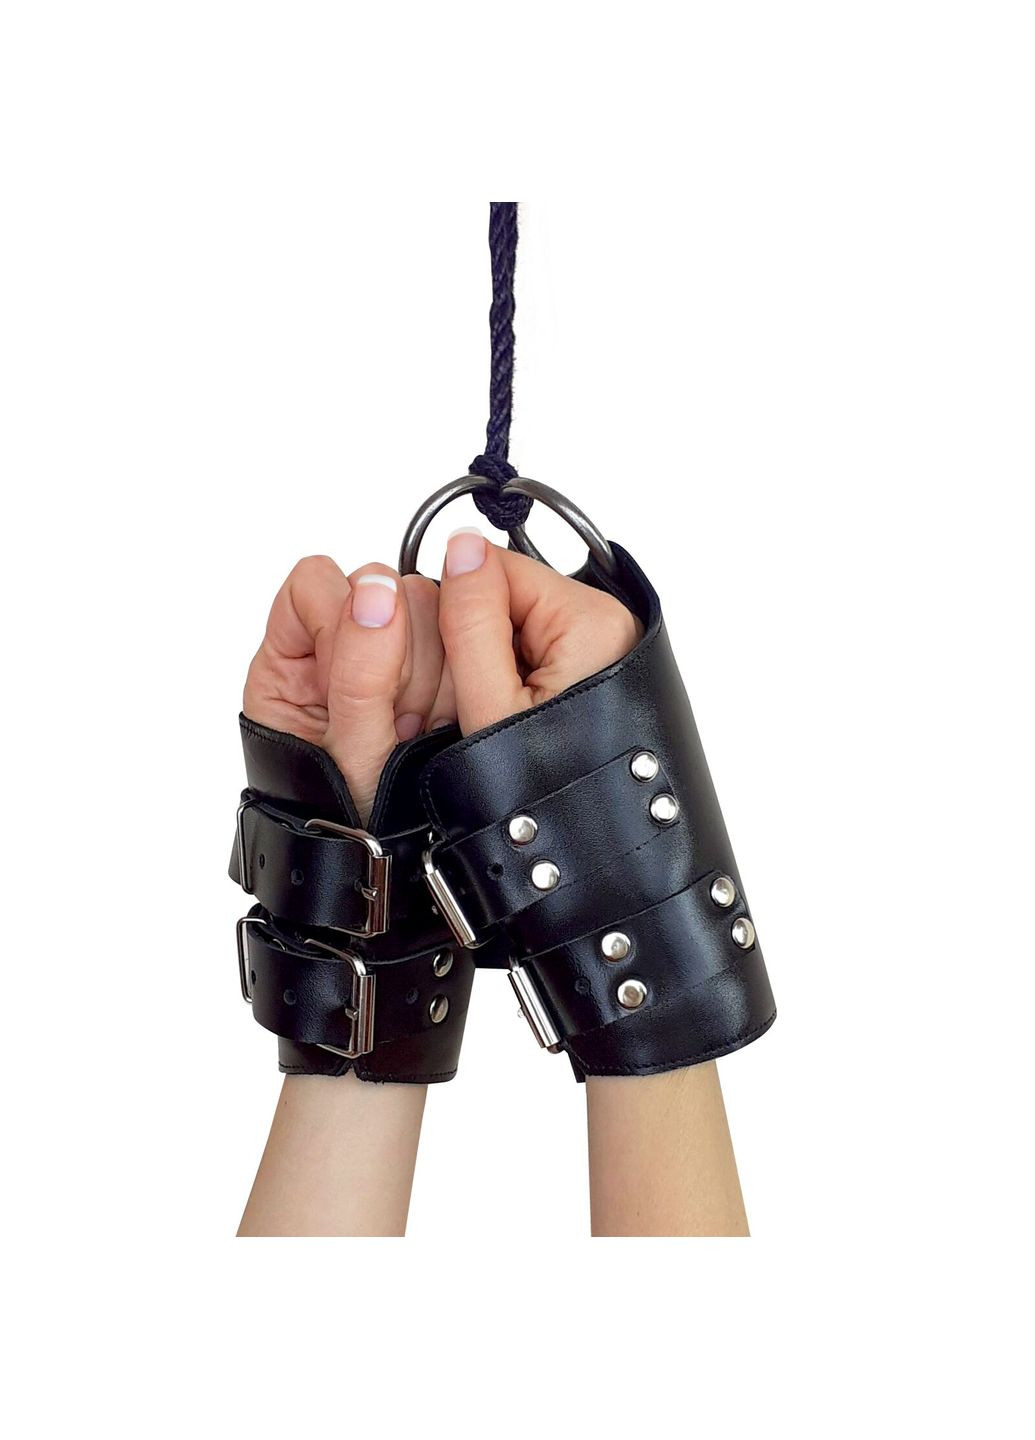 Манжеты для подвеса за руки Kinky Hand Cuffs For Suspension из натуральной кожи, цвет черный Art of Sex (291441808)